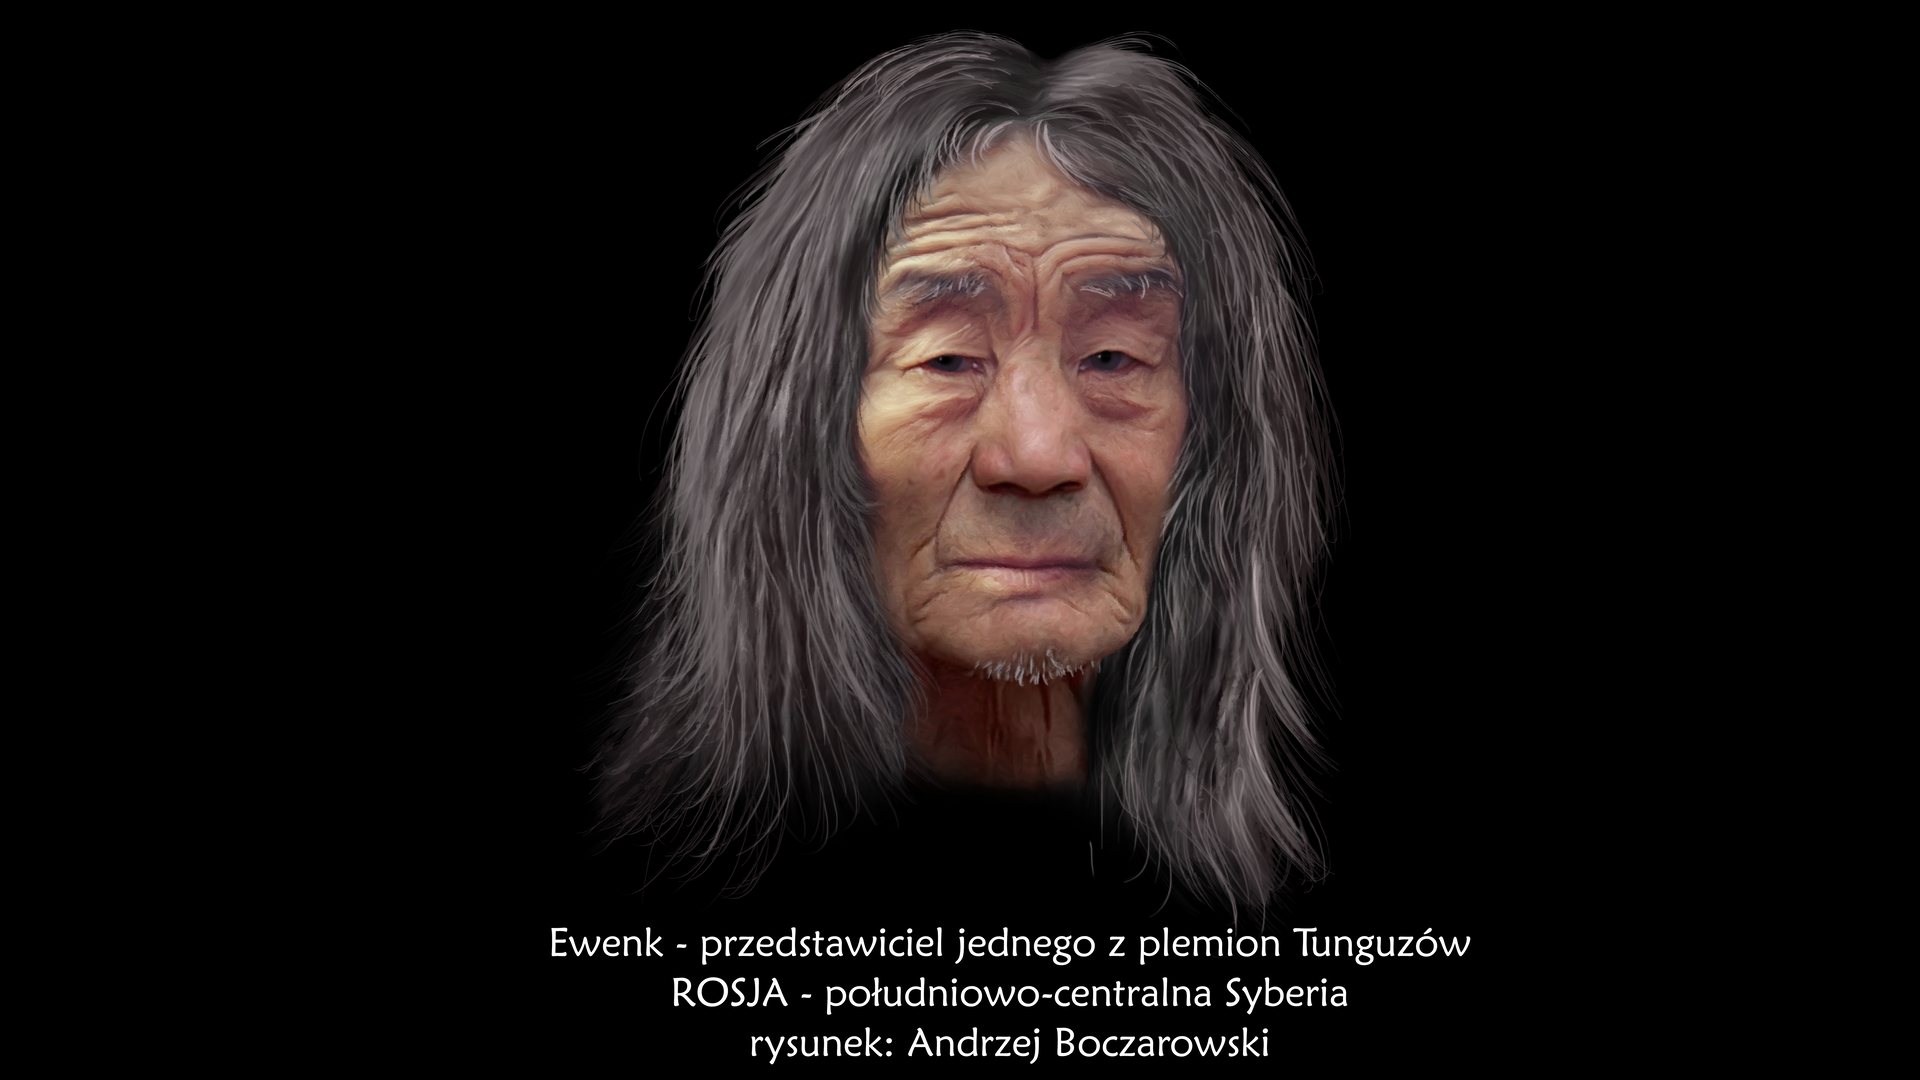 Ilustracja prezentuje portret Ewenka. Jest to, starszy mężczyzna o jasnej karnacji, pociągłej płaskiej twarzy, krótkim czole ze zmarszczkami oraz długich czarnych włosach z pasmami włosów siwych.